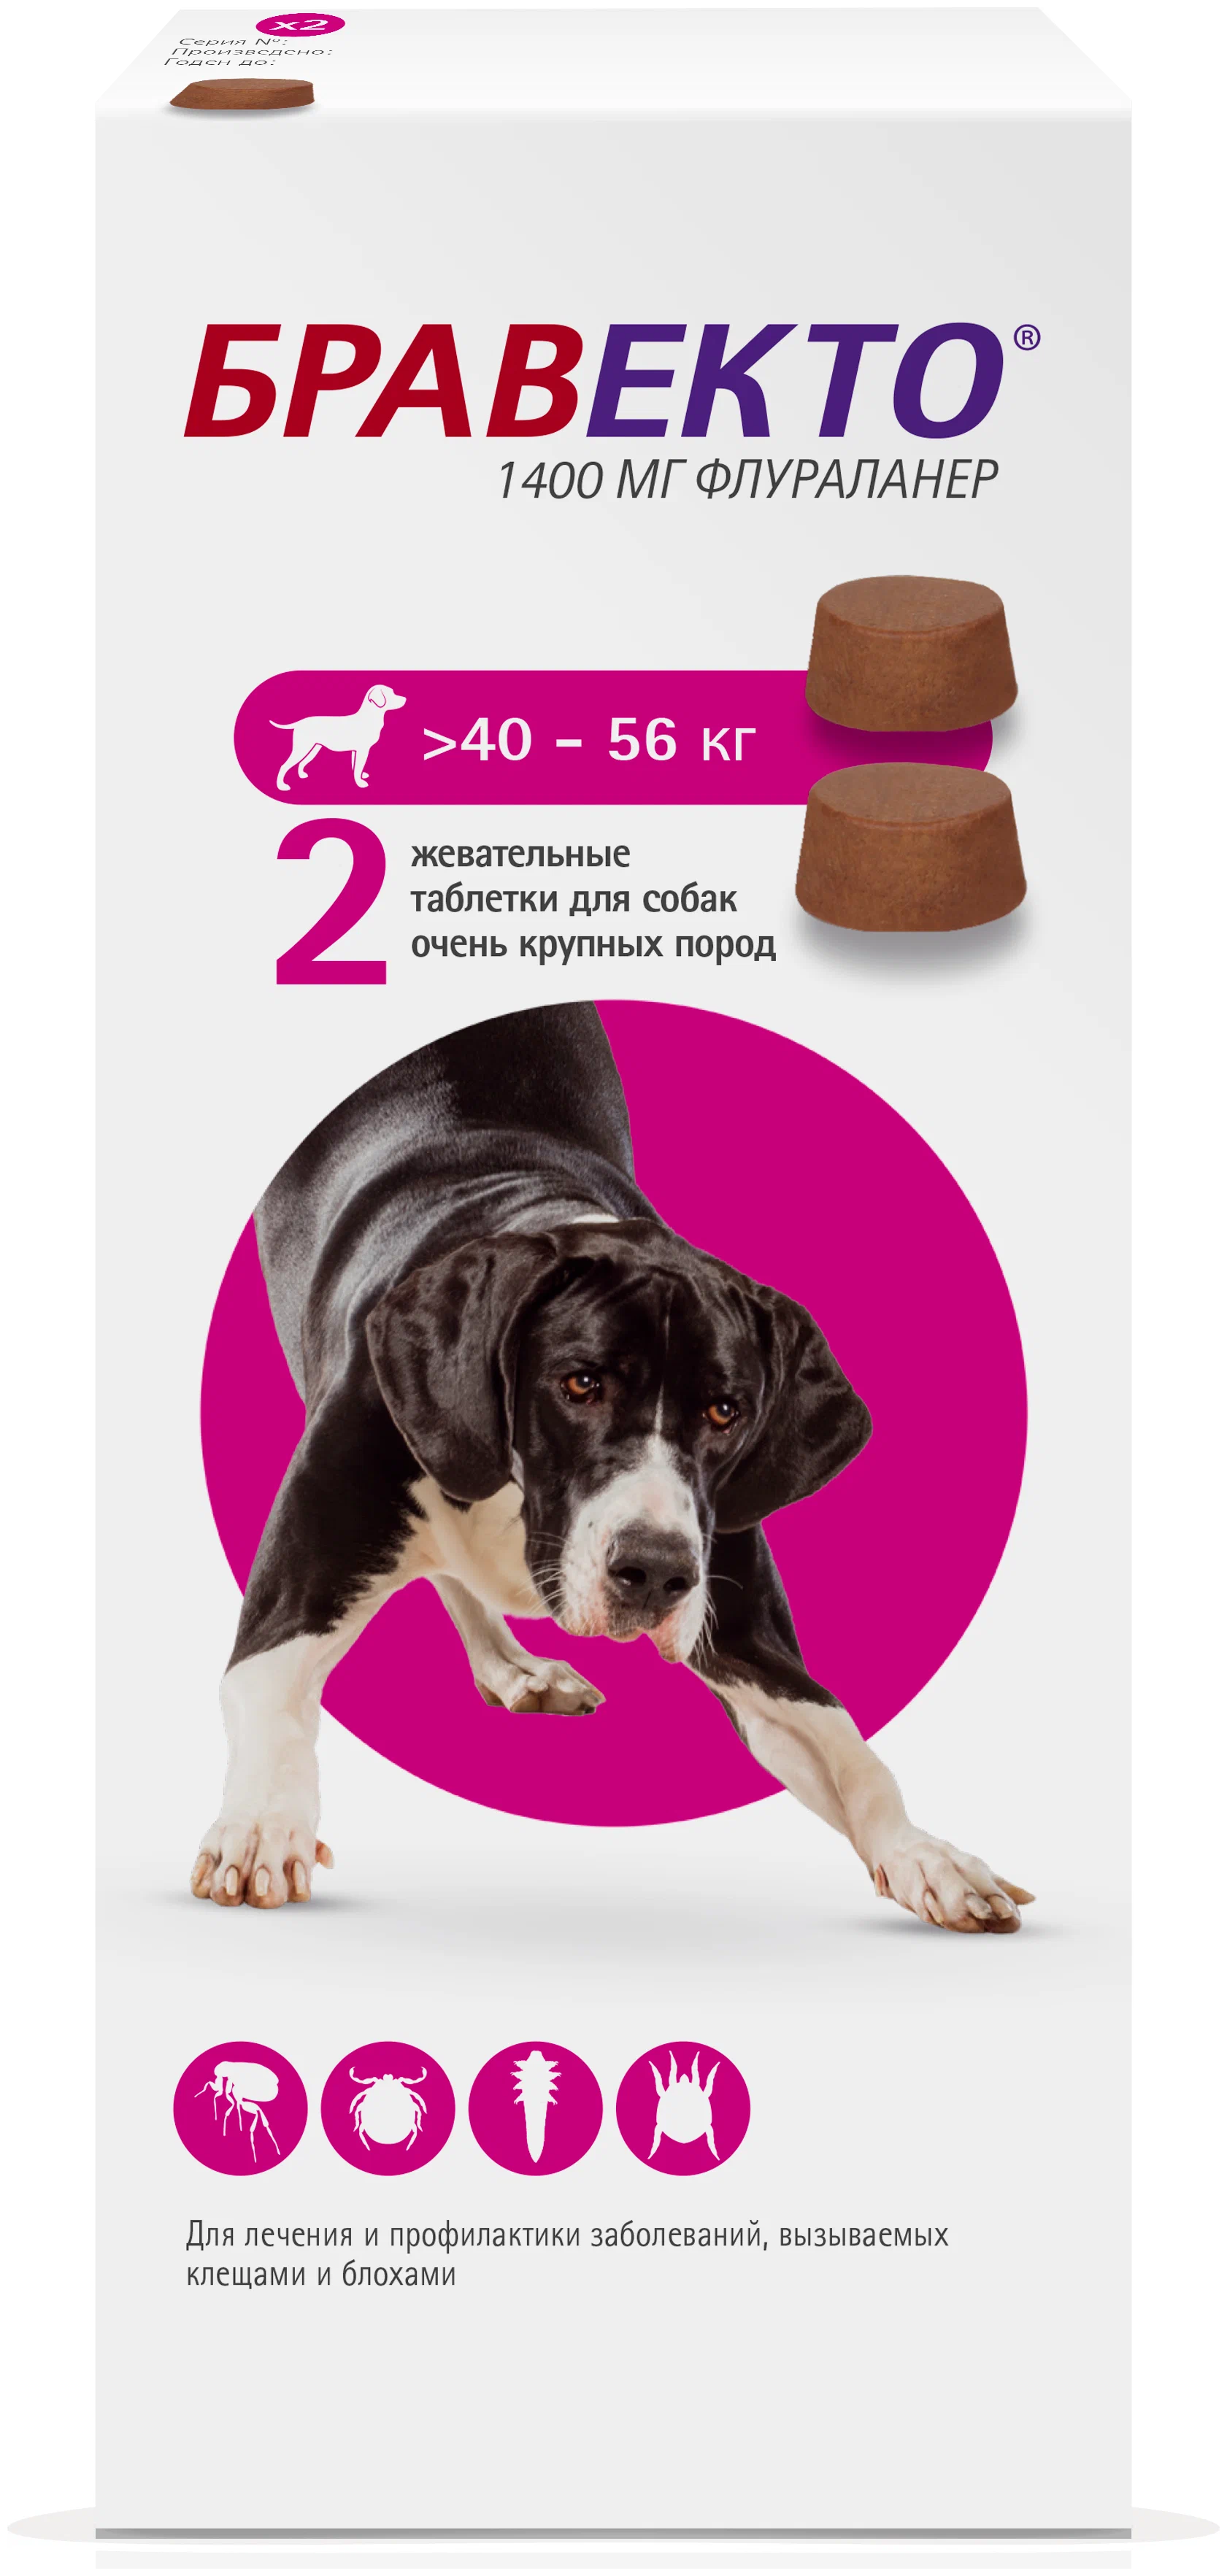 Средство от клещей для собак бравекто. Бравекто 1400мг таблетка инсектоакарицидная д/собак 40-56кг. Бравекто таблетки для собак 40-56. Бравекто 1400 мг д/собак 40-56 кг. Бравекто для собак 40-56 2.